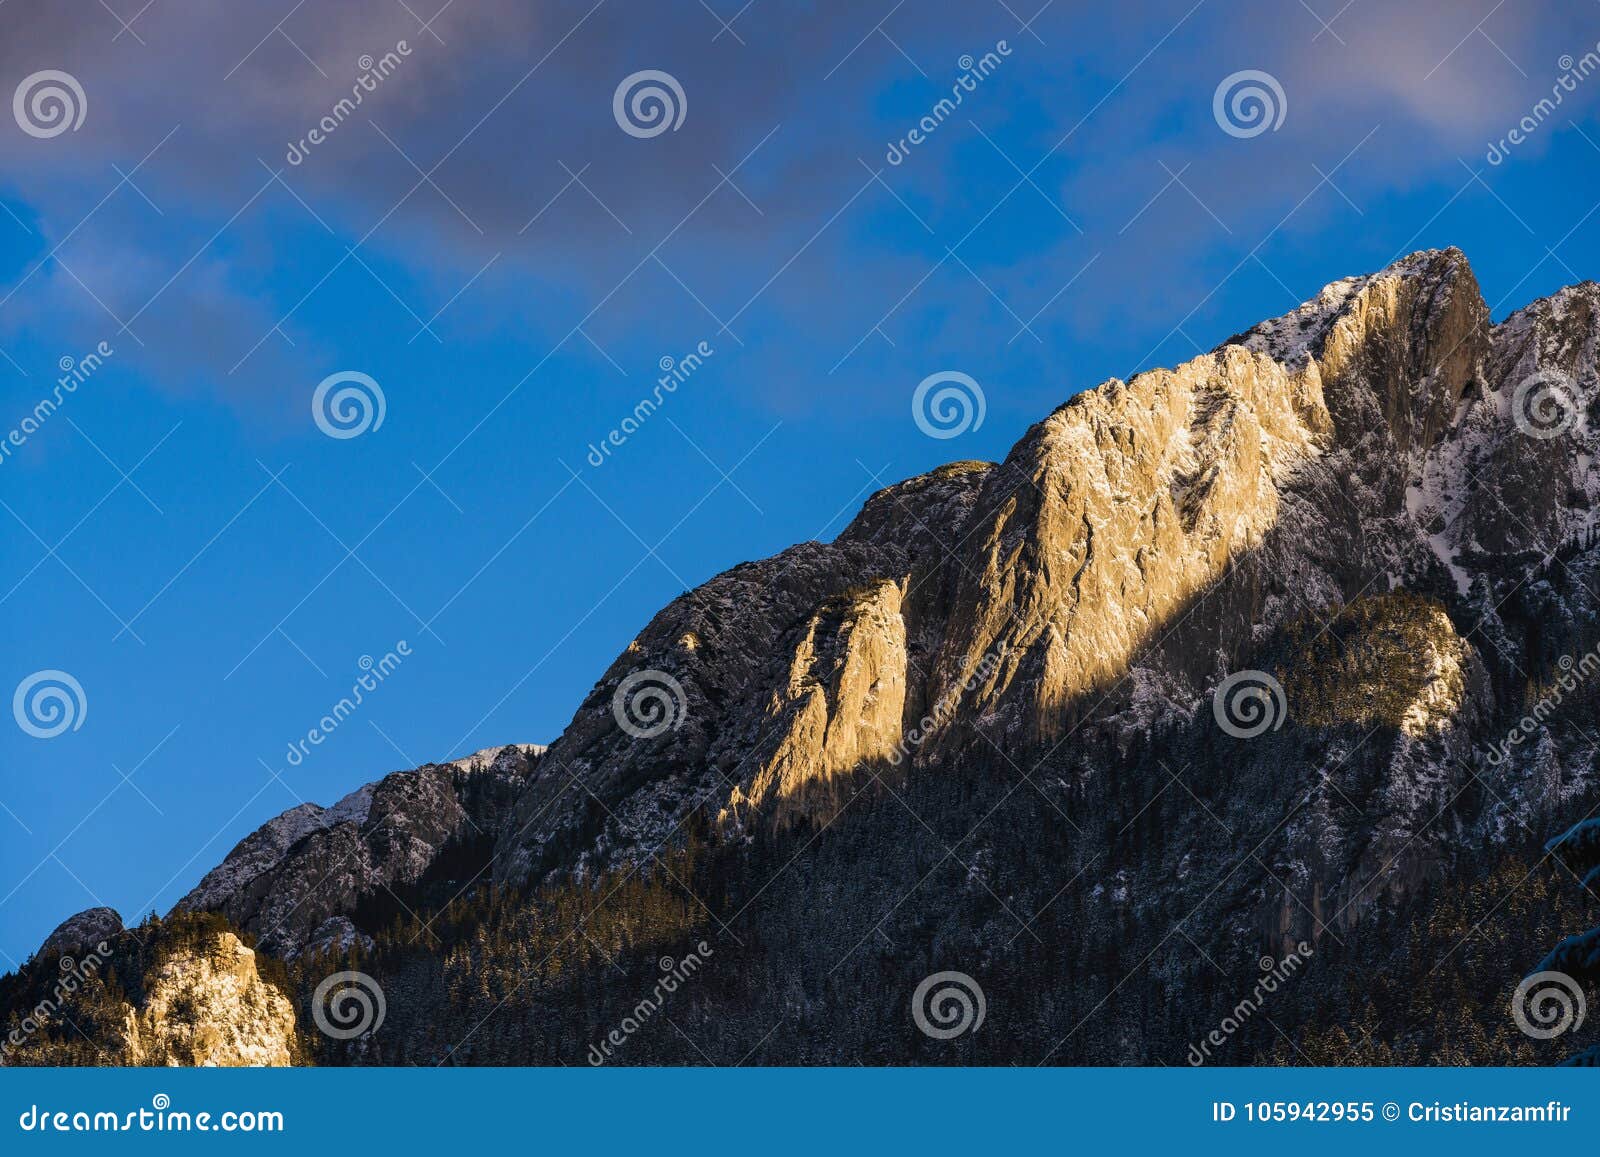 winter landscape with carpati piatra craiului mountain